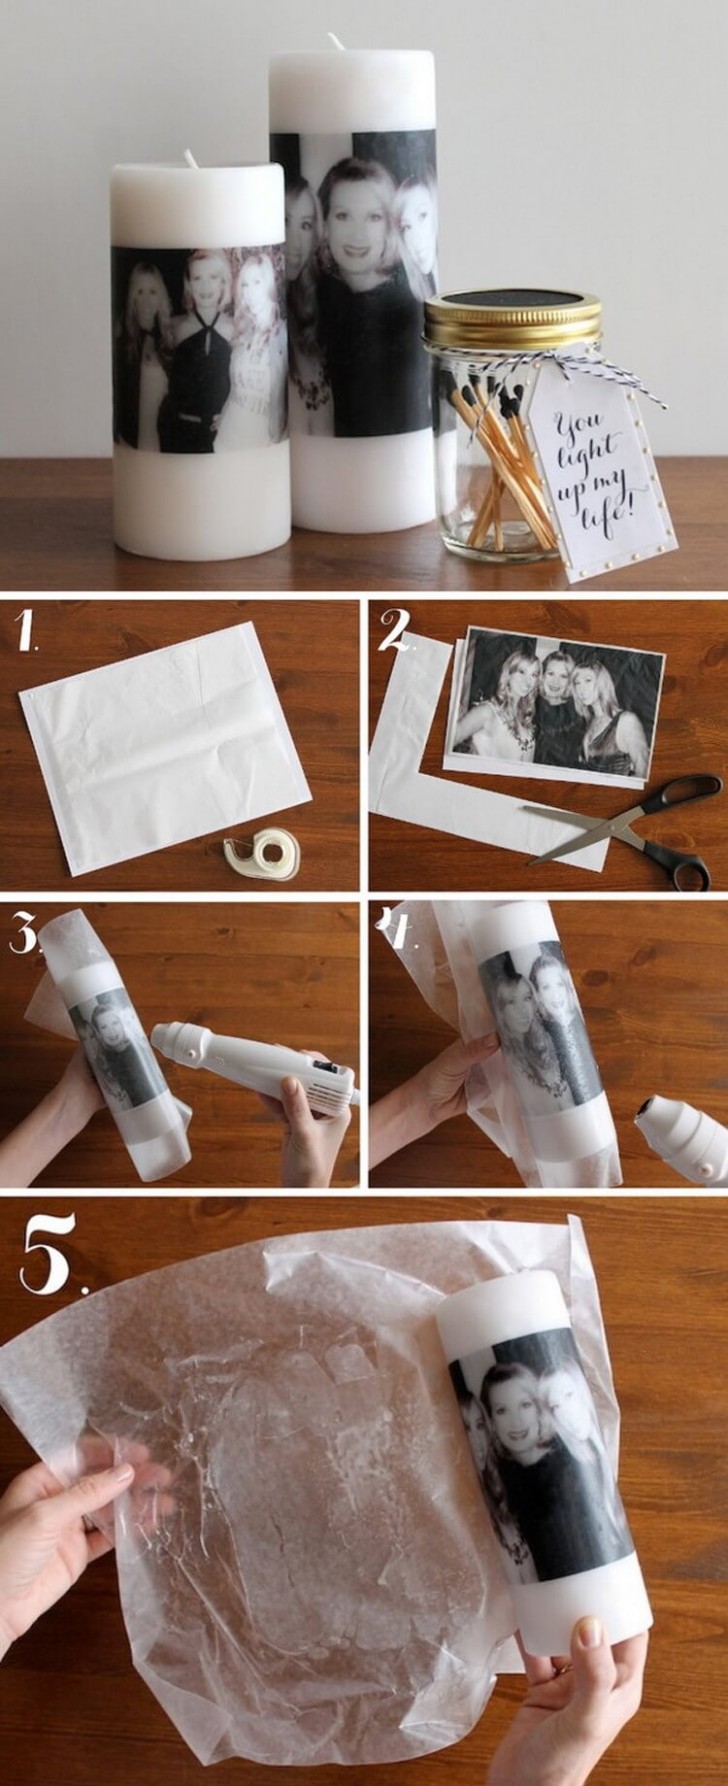 2. Stampate una foto su carta velina (fissata a un foglio normale), poi copritela con carta forno e usate una pistola termica (o asciugacapelli) per trasferire l'immagine sulla cera